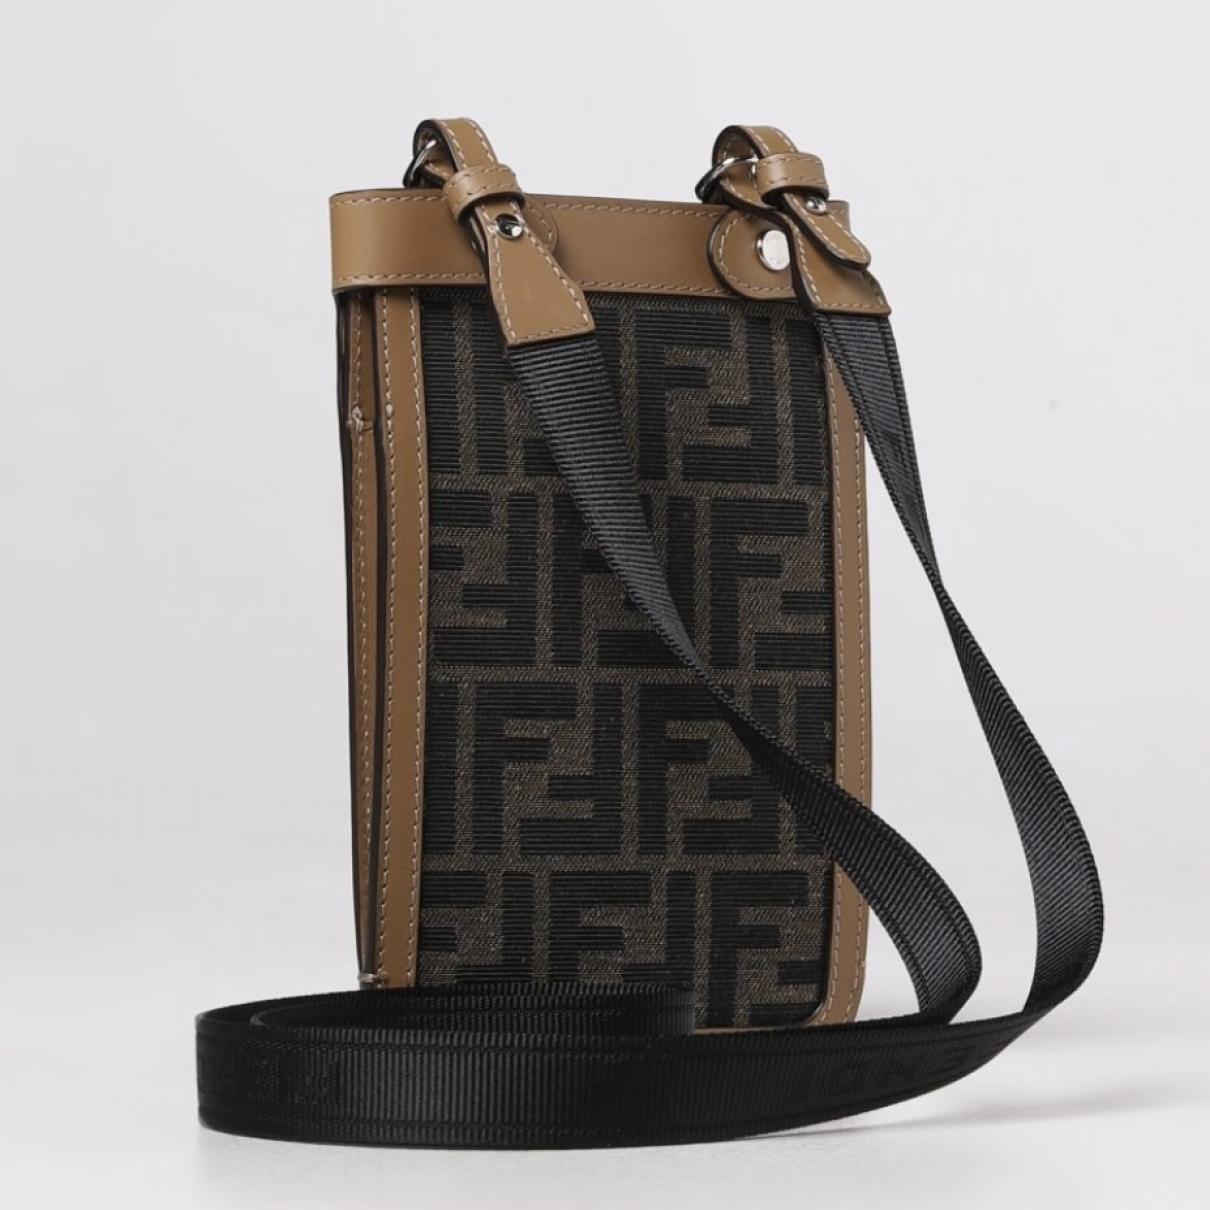 Leather purse - 2